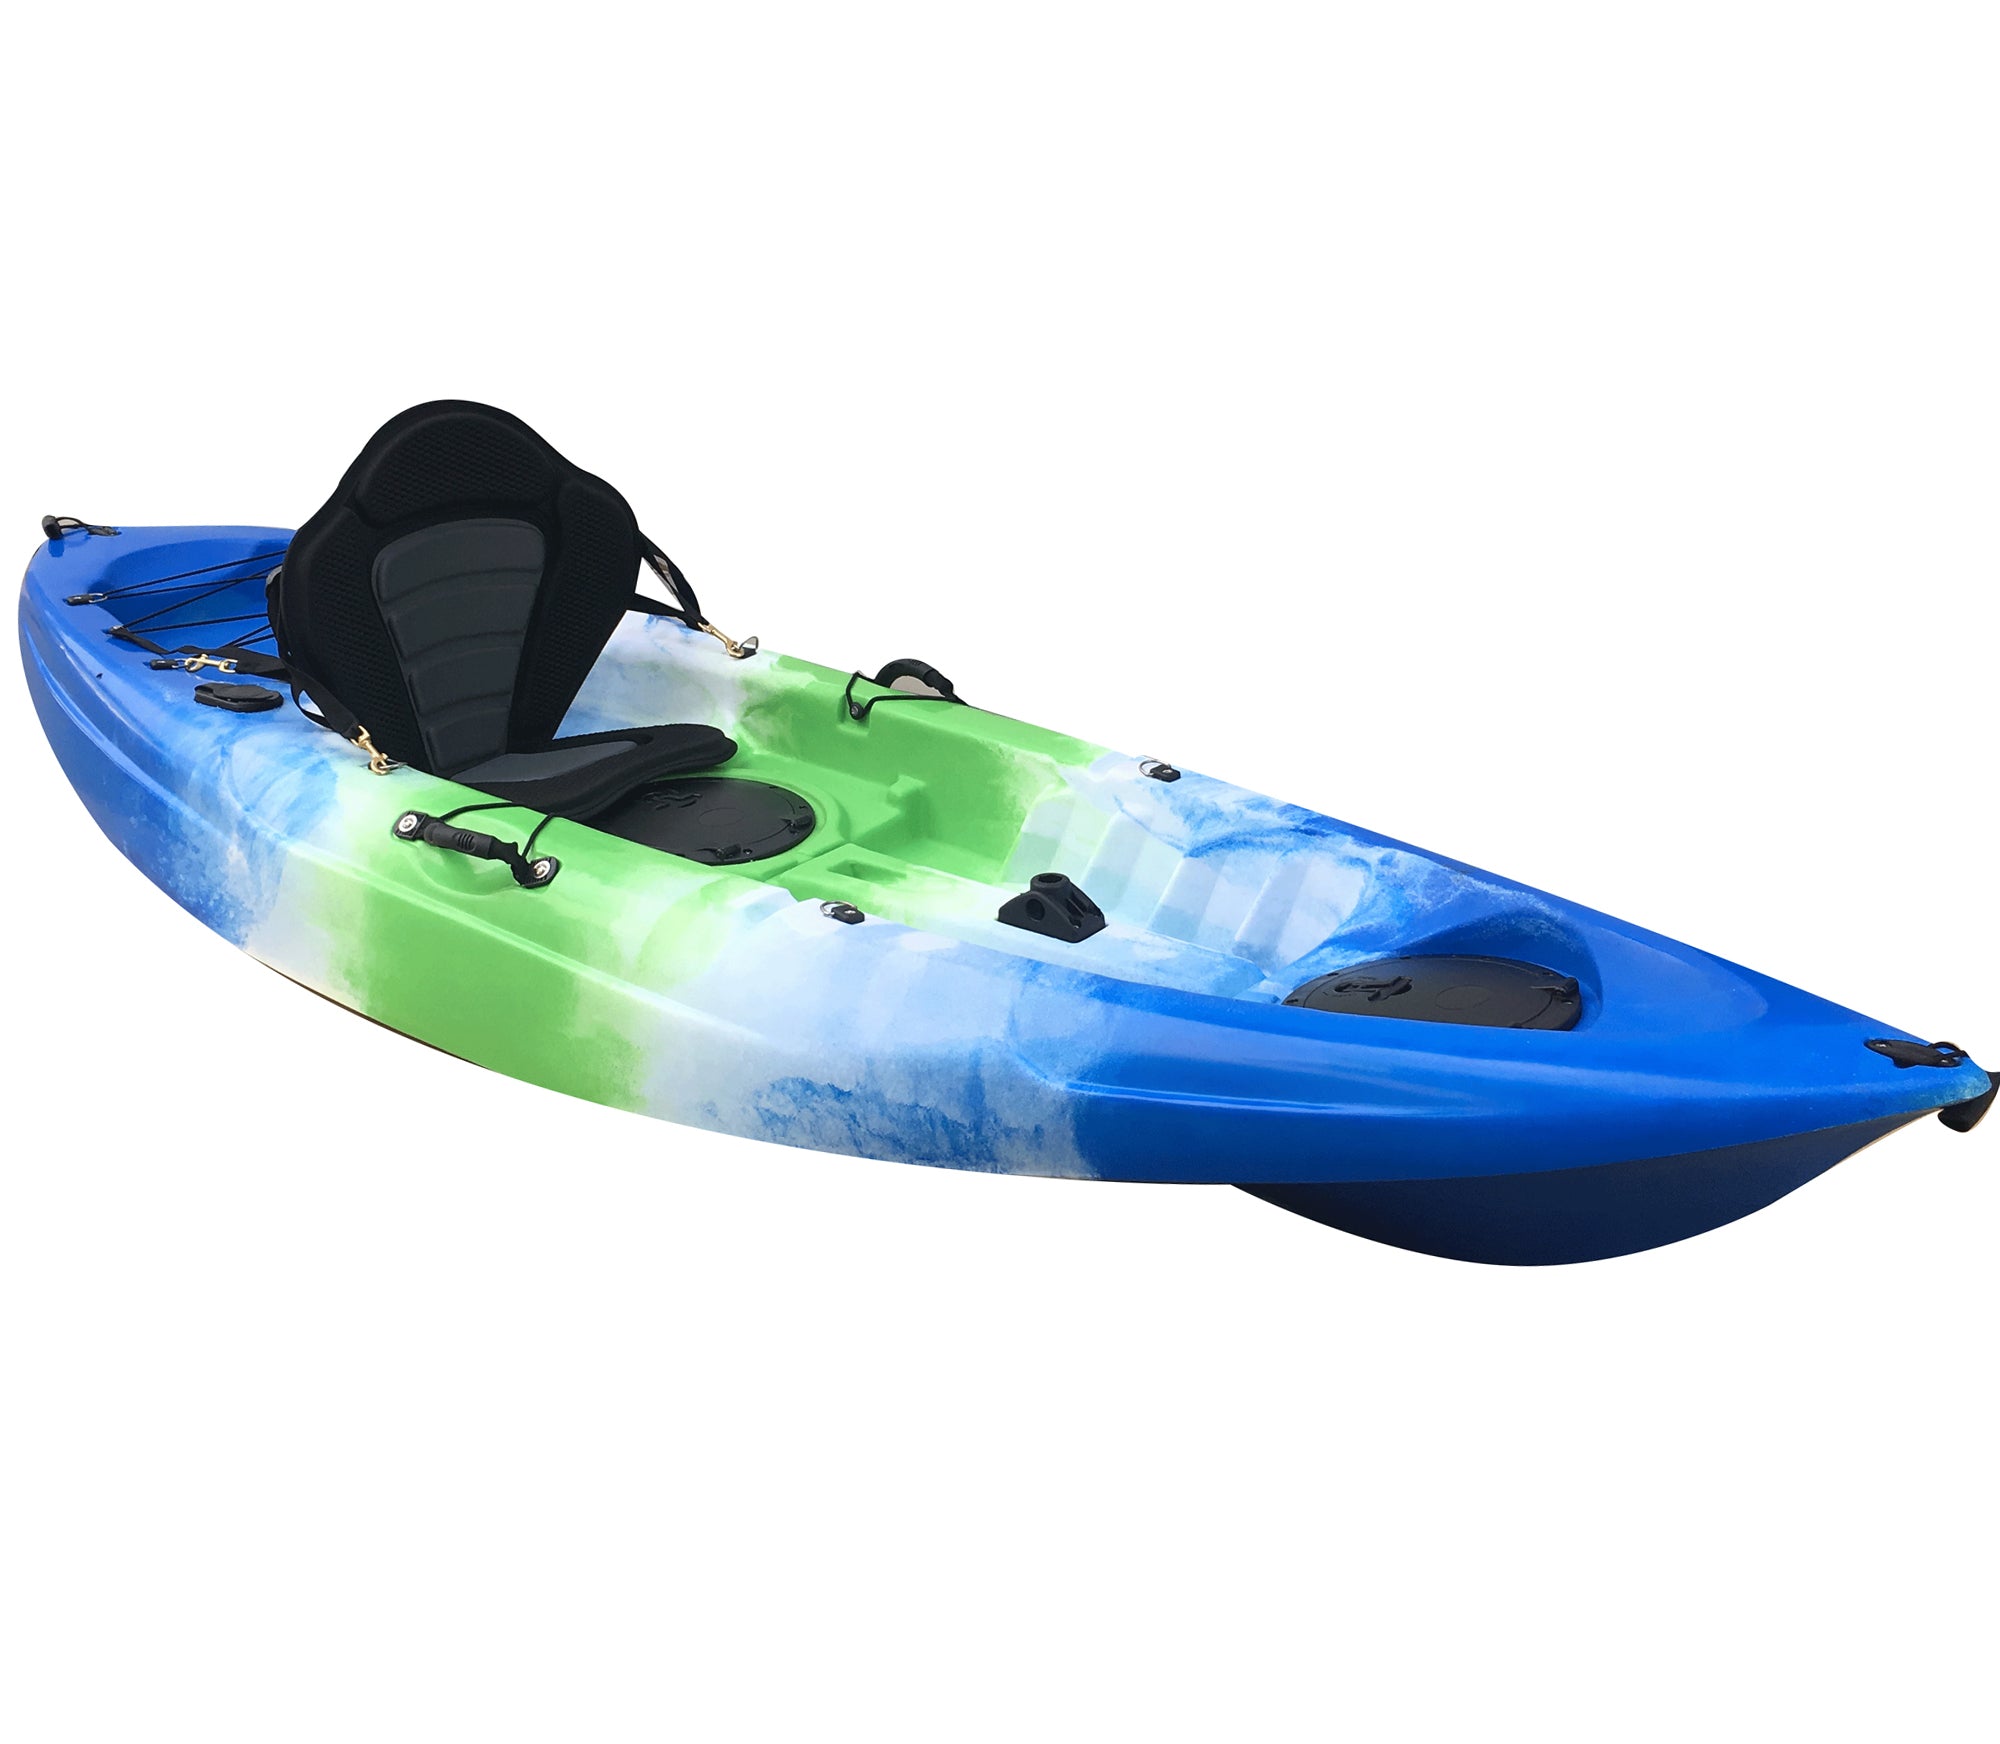 The SkipJak Atlas 2.0 - 9ft Sit On Top Kayak Kayaks Lake Land Kayaks Deep Blue White Green Interval 